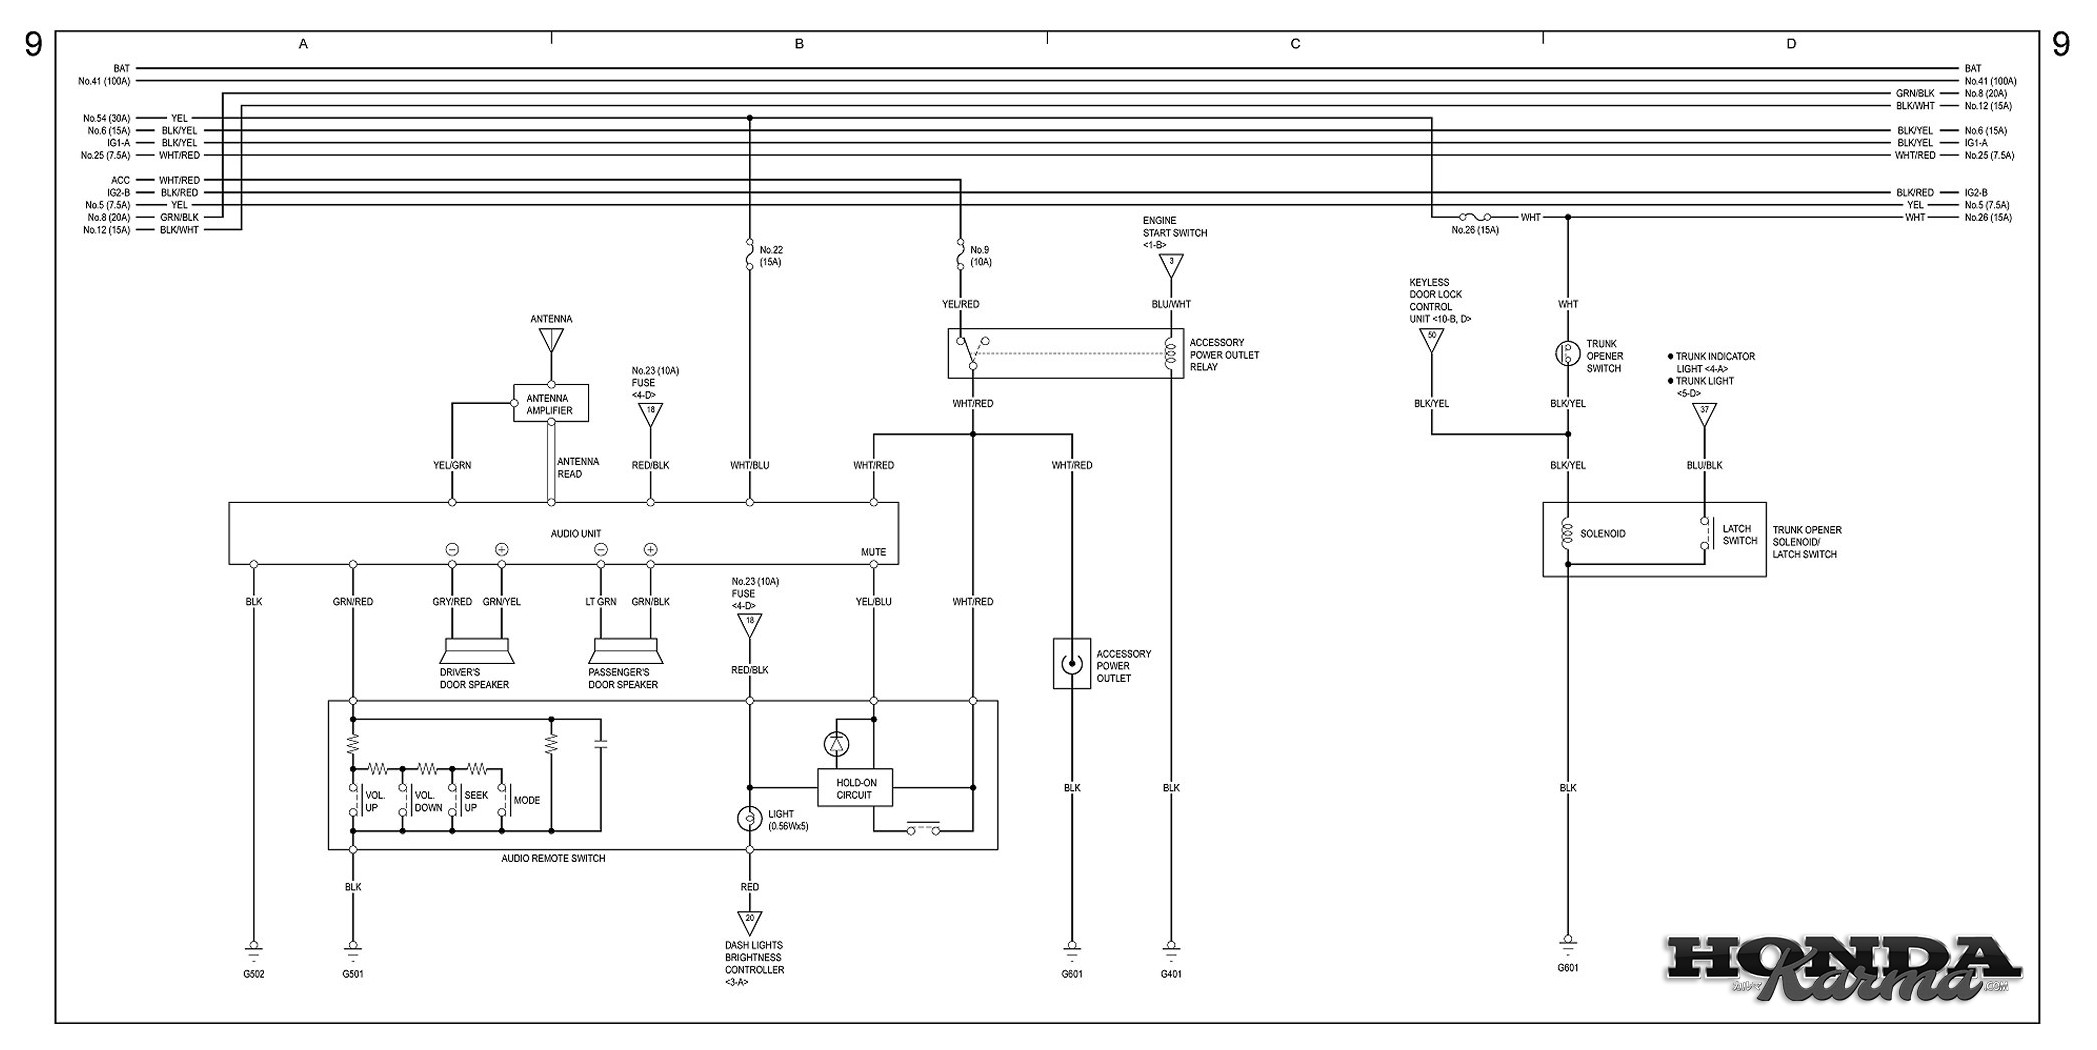 Gentex Mirror Wiring Diagram Forum Explained Wiring Diagrams Ballast Wiring Diagram Gentex 177 Wiring Diagram